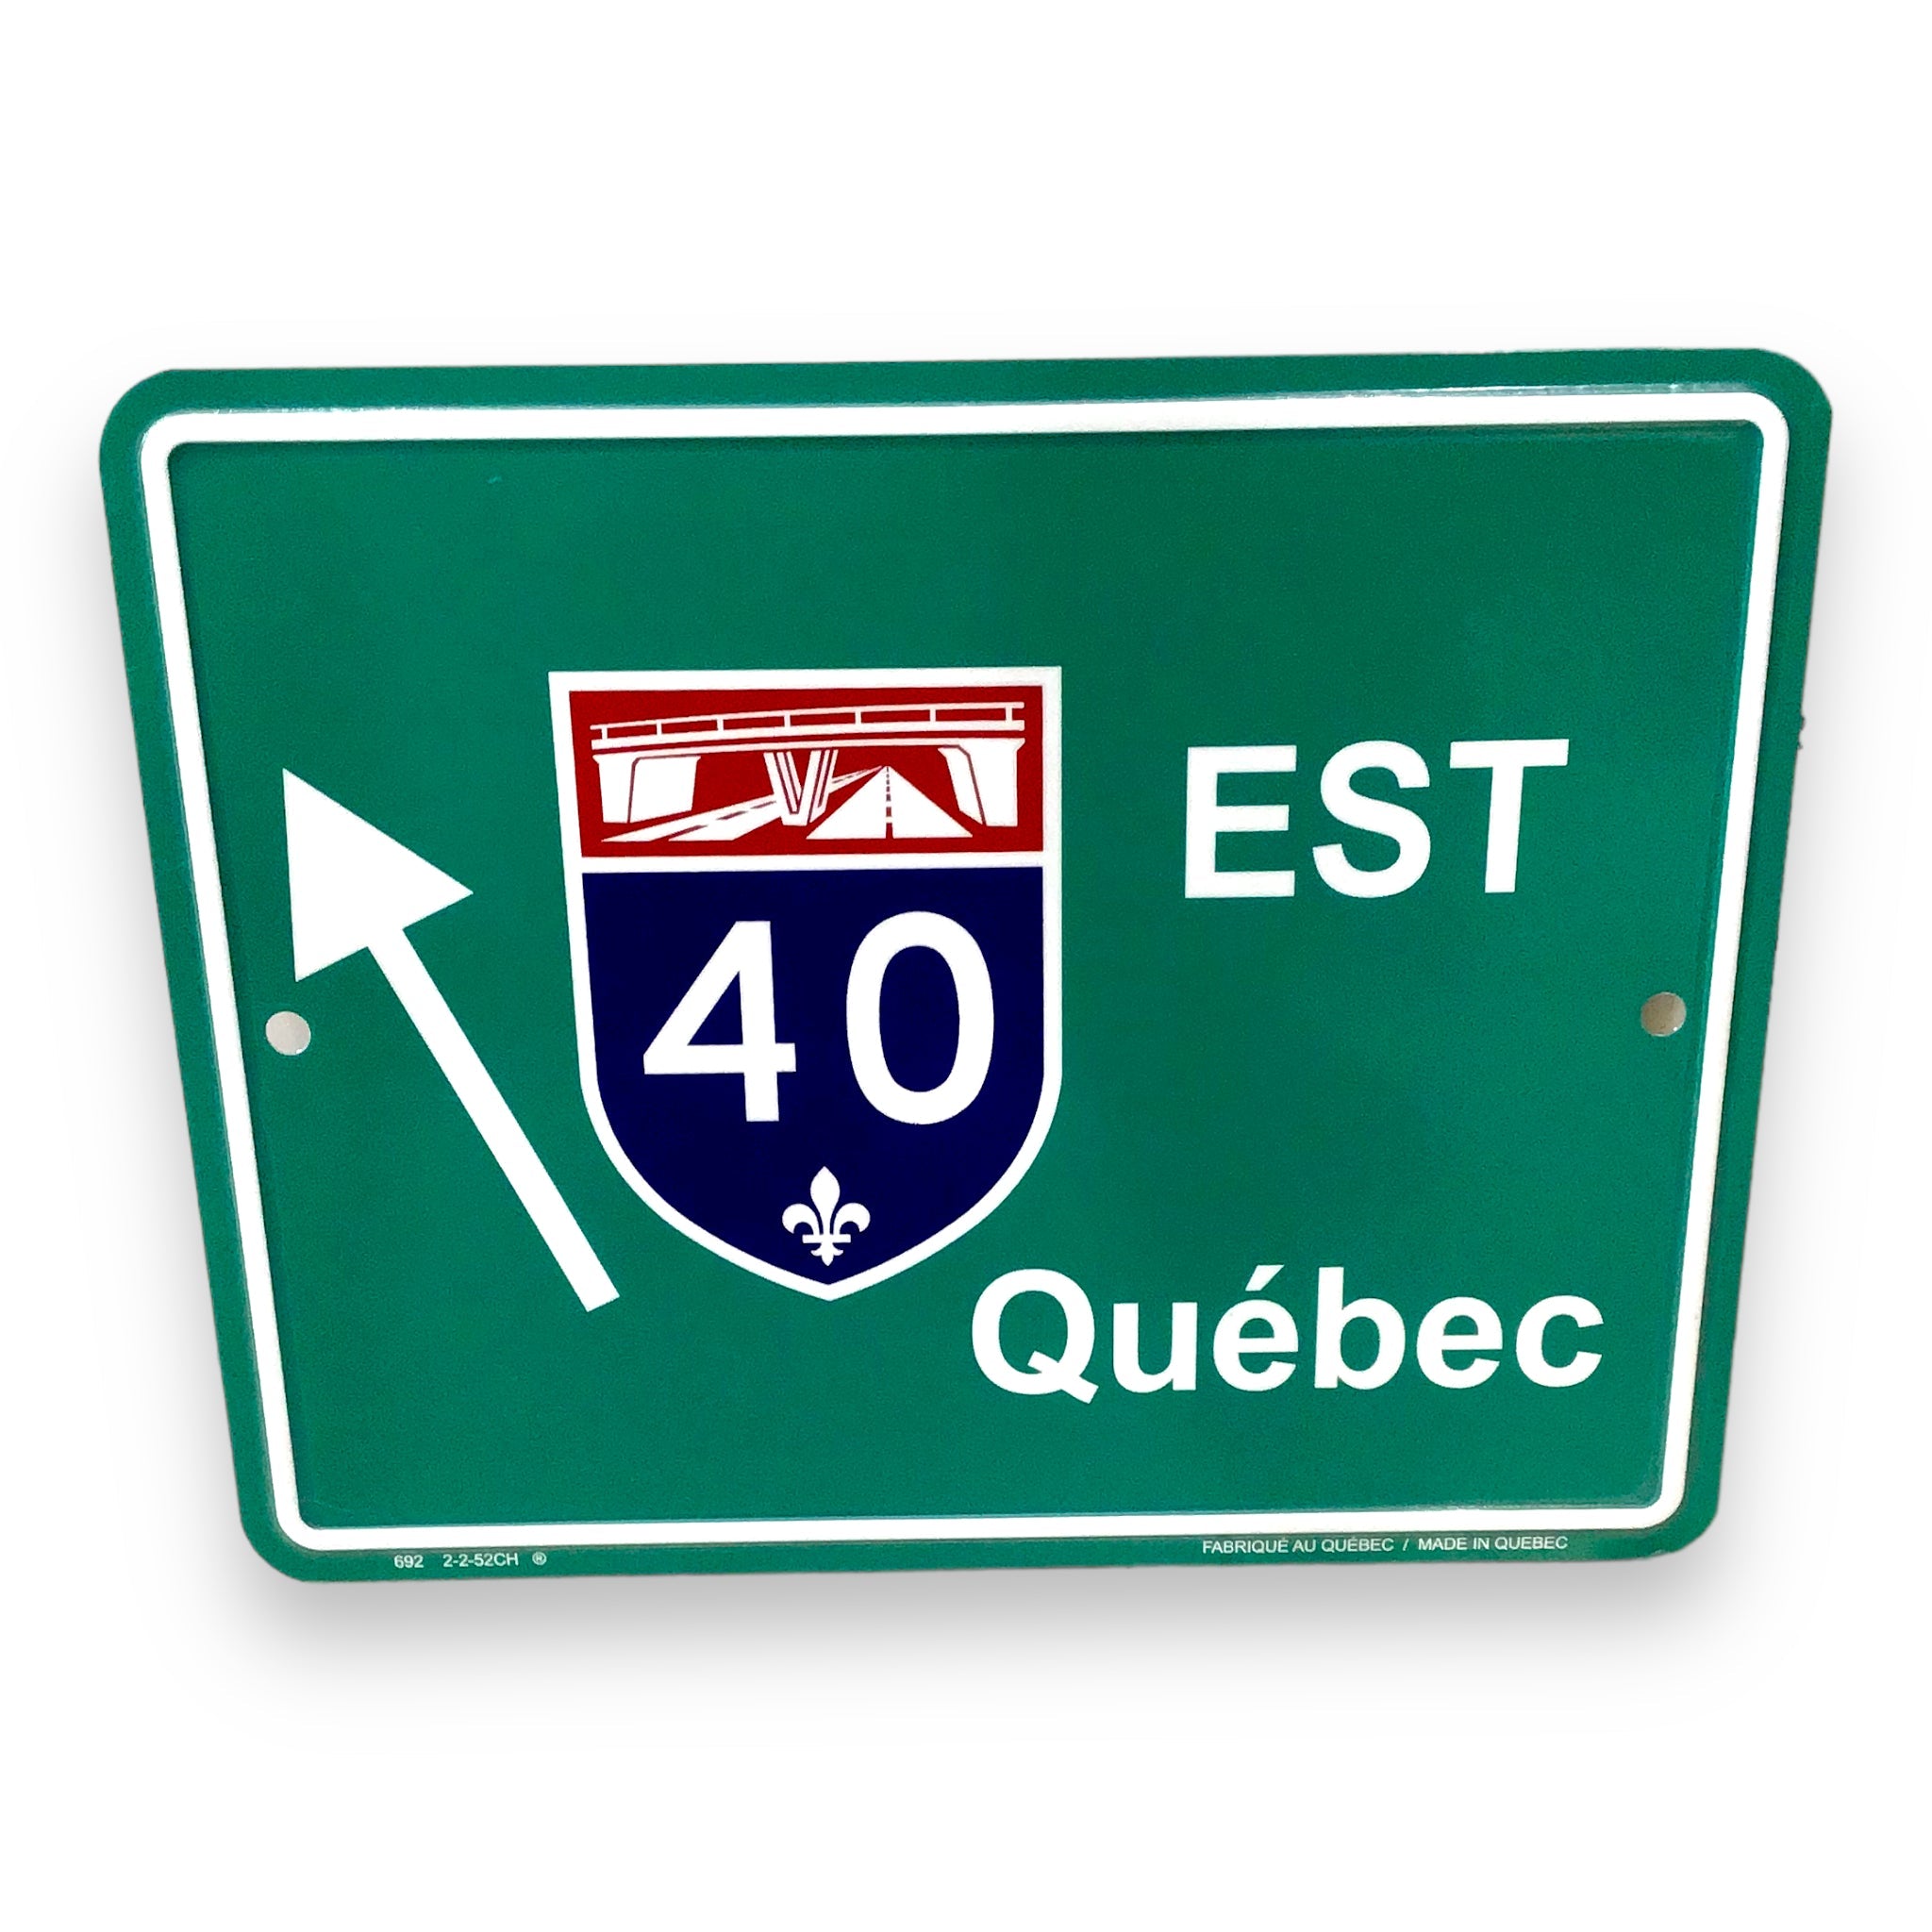 Quebec Route 40 EST Highway Marker Road Sign 9 x7 Souvenir Collection Plaque